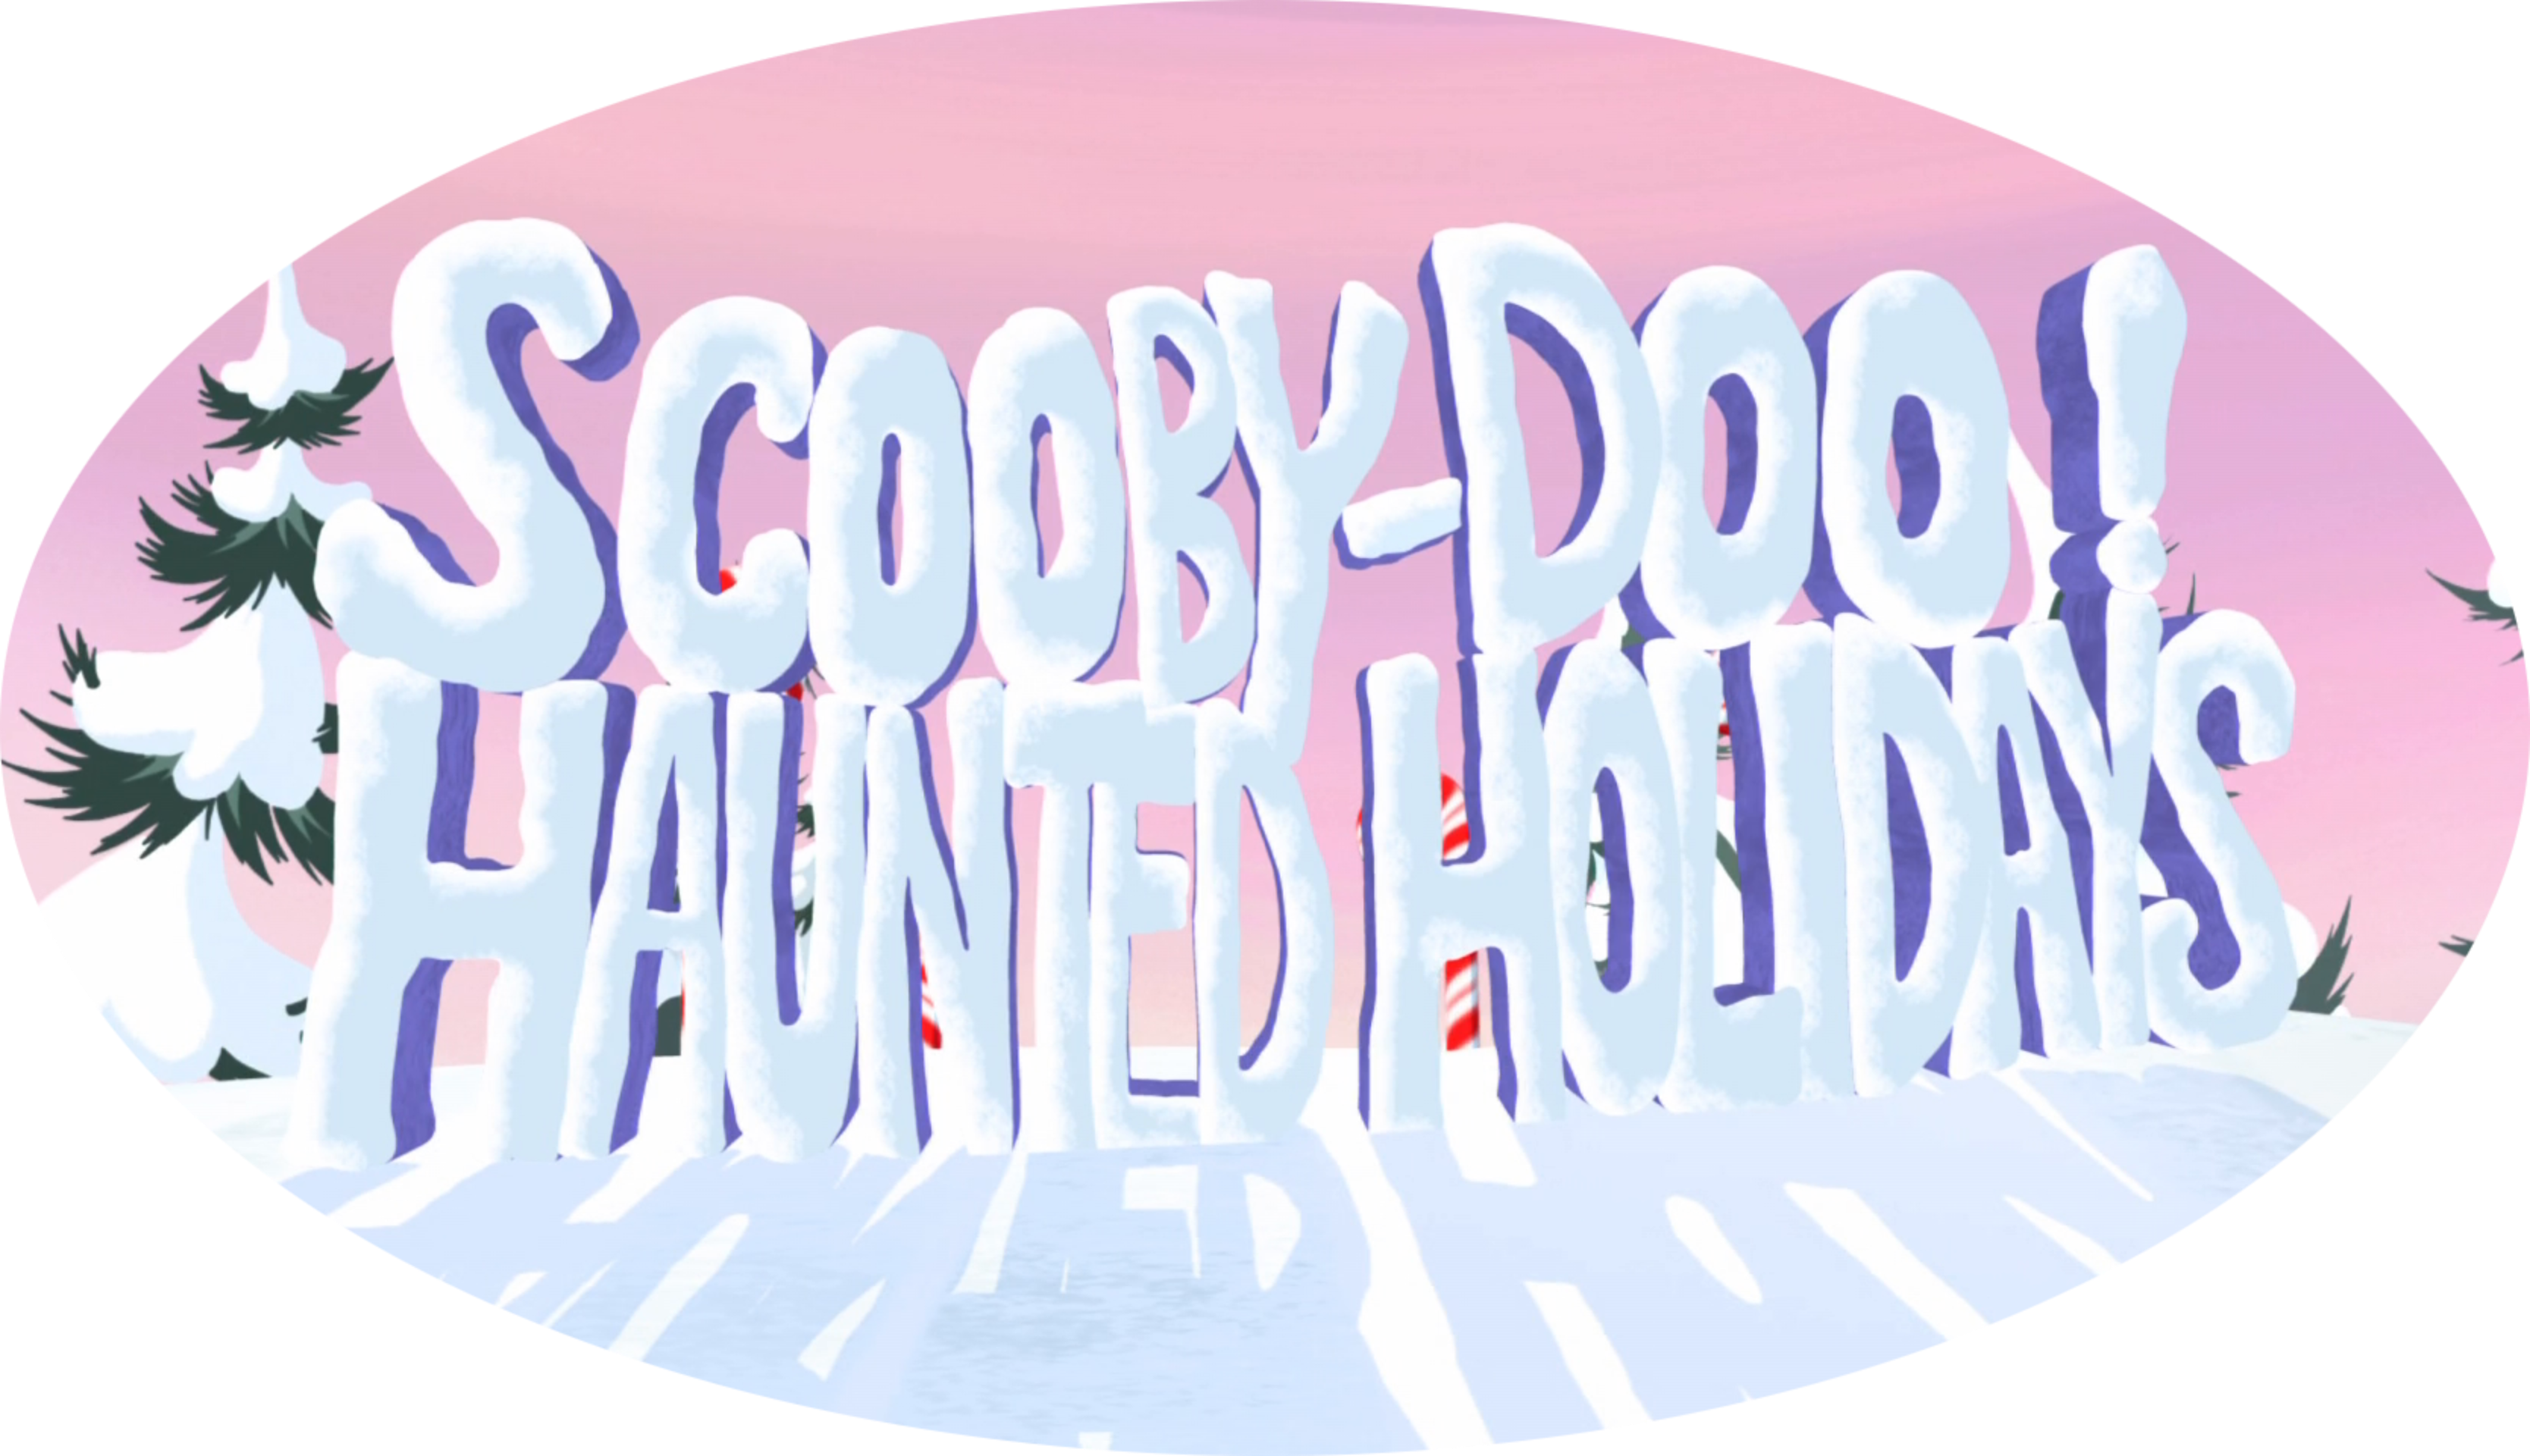 Scooby-Doo! Haunted Holidays 